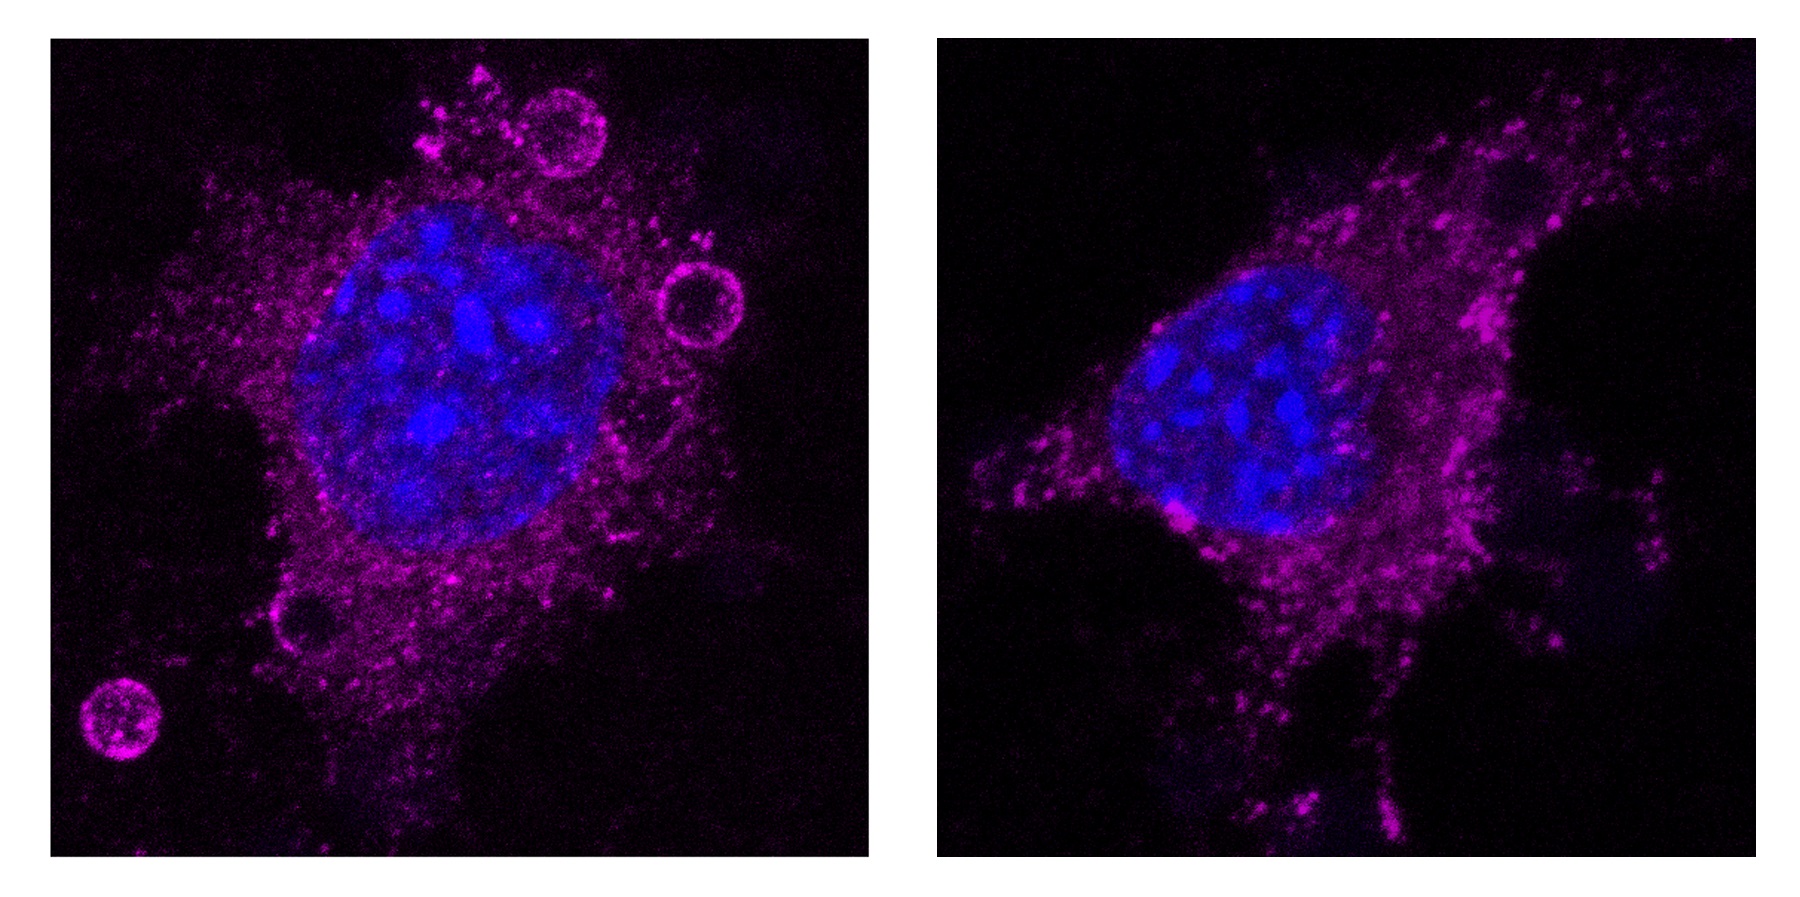 Fibroblasto embrionario murino Cav1KO (izquierda, sin caveolas) muestra un mayor reclutamiento de integrina beta 1 activa (magenta) en torno a bolitas recubiertas con fibronectina, en comparación con un fibroblasto embrionario murino Cav1WT (derecha, con caveolas).